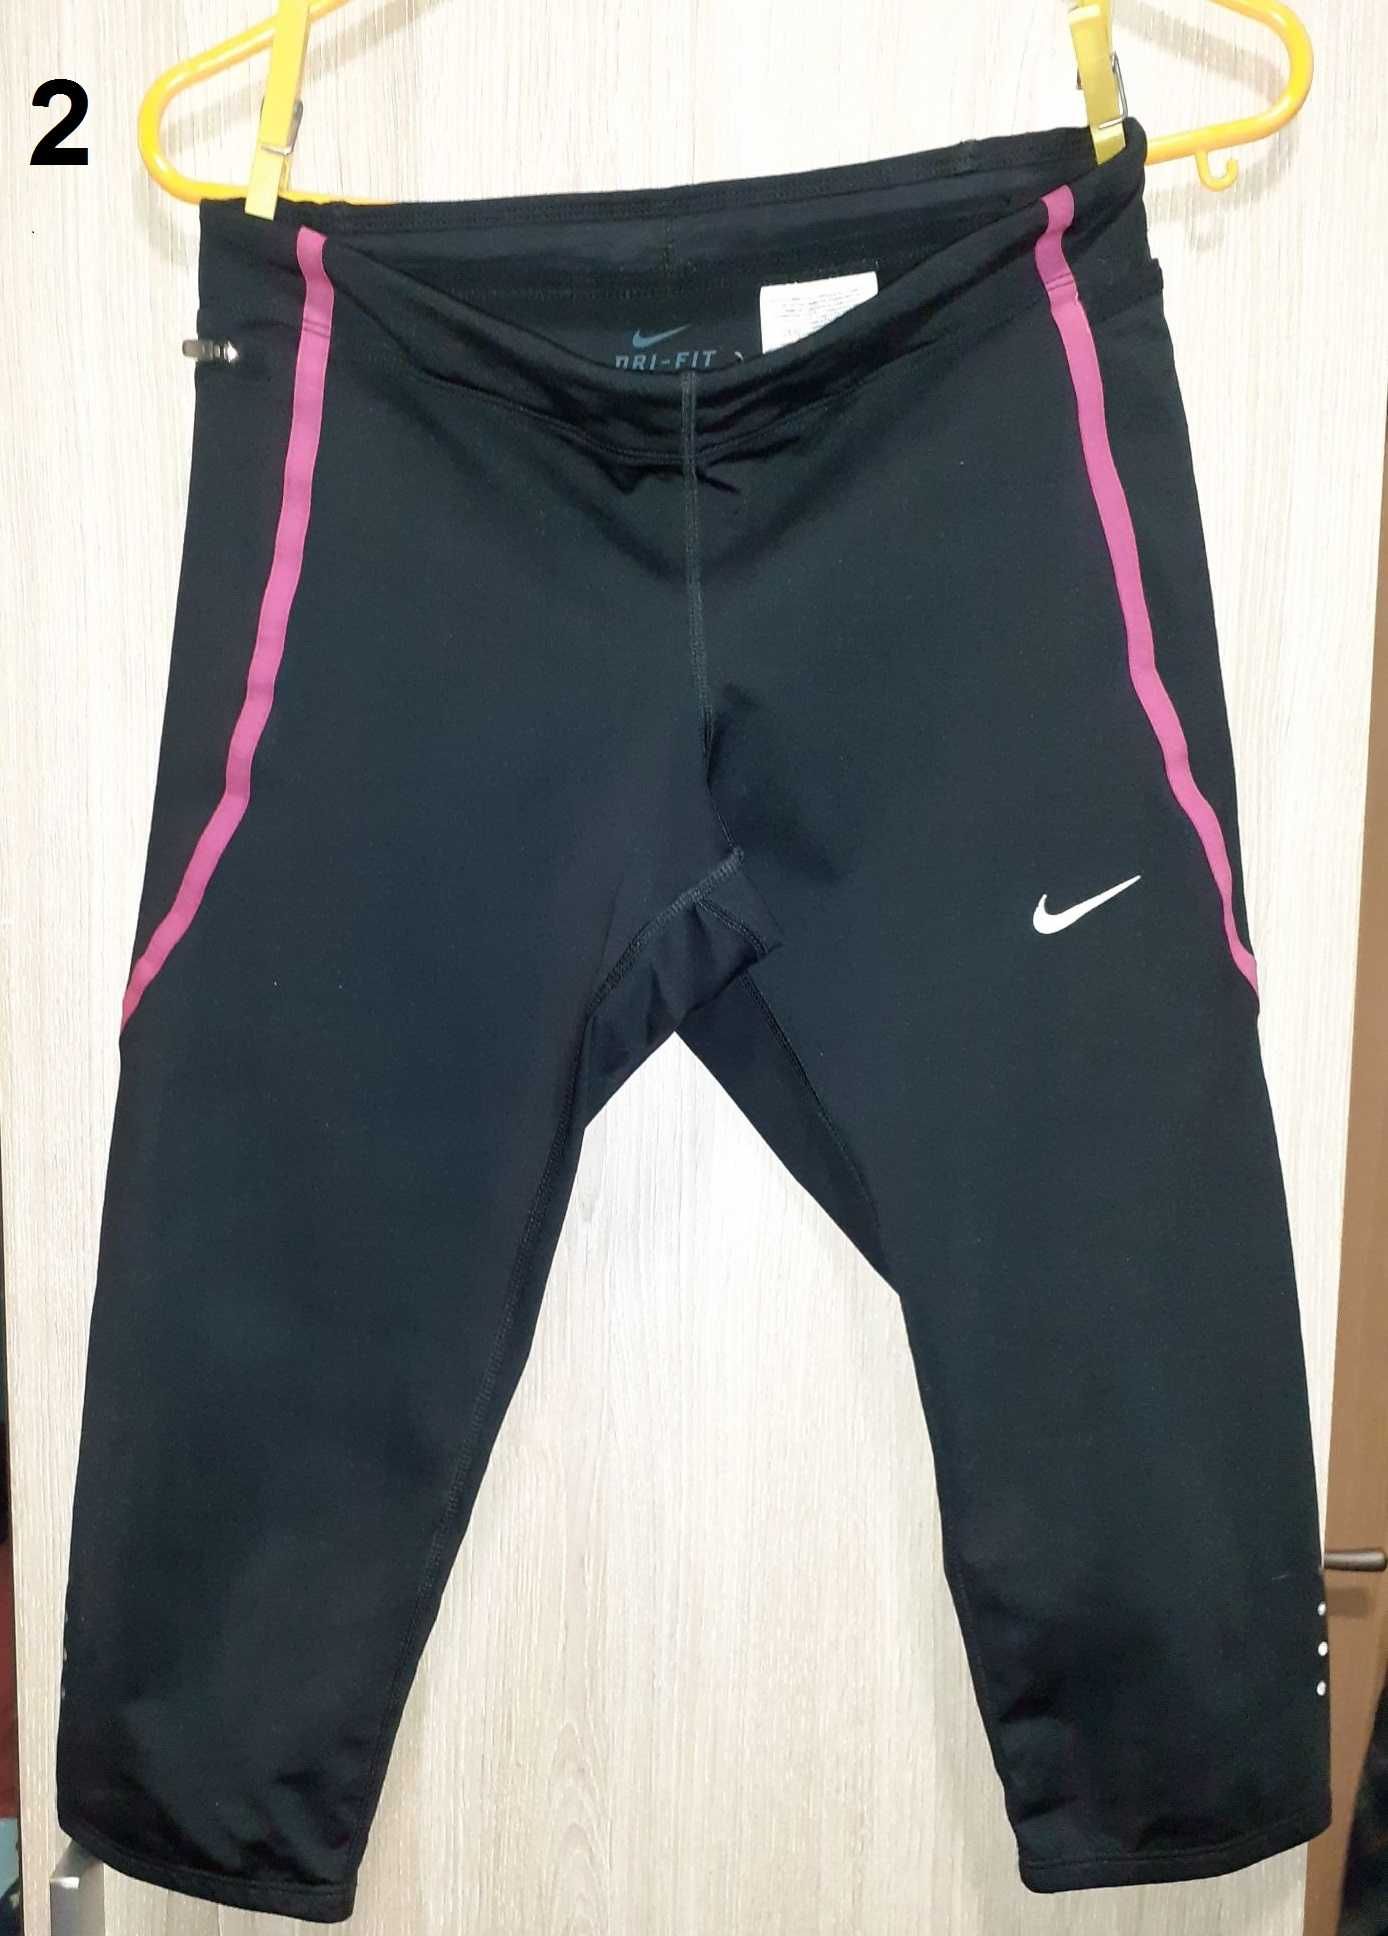 Desporto - tops, calções, calças e maiô (Xs e S) - Nike e mais